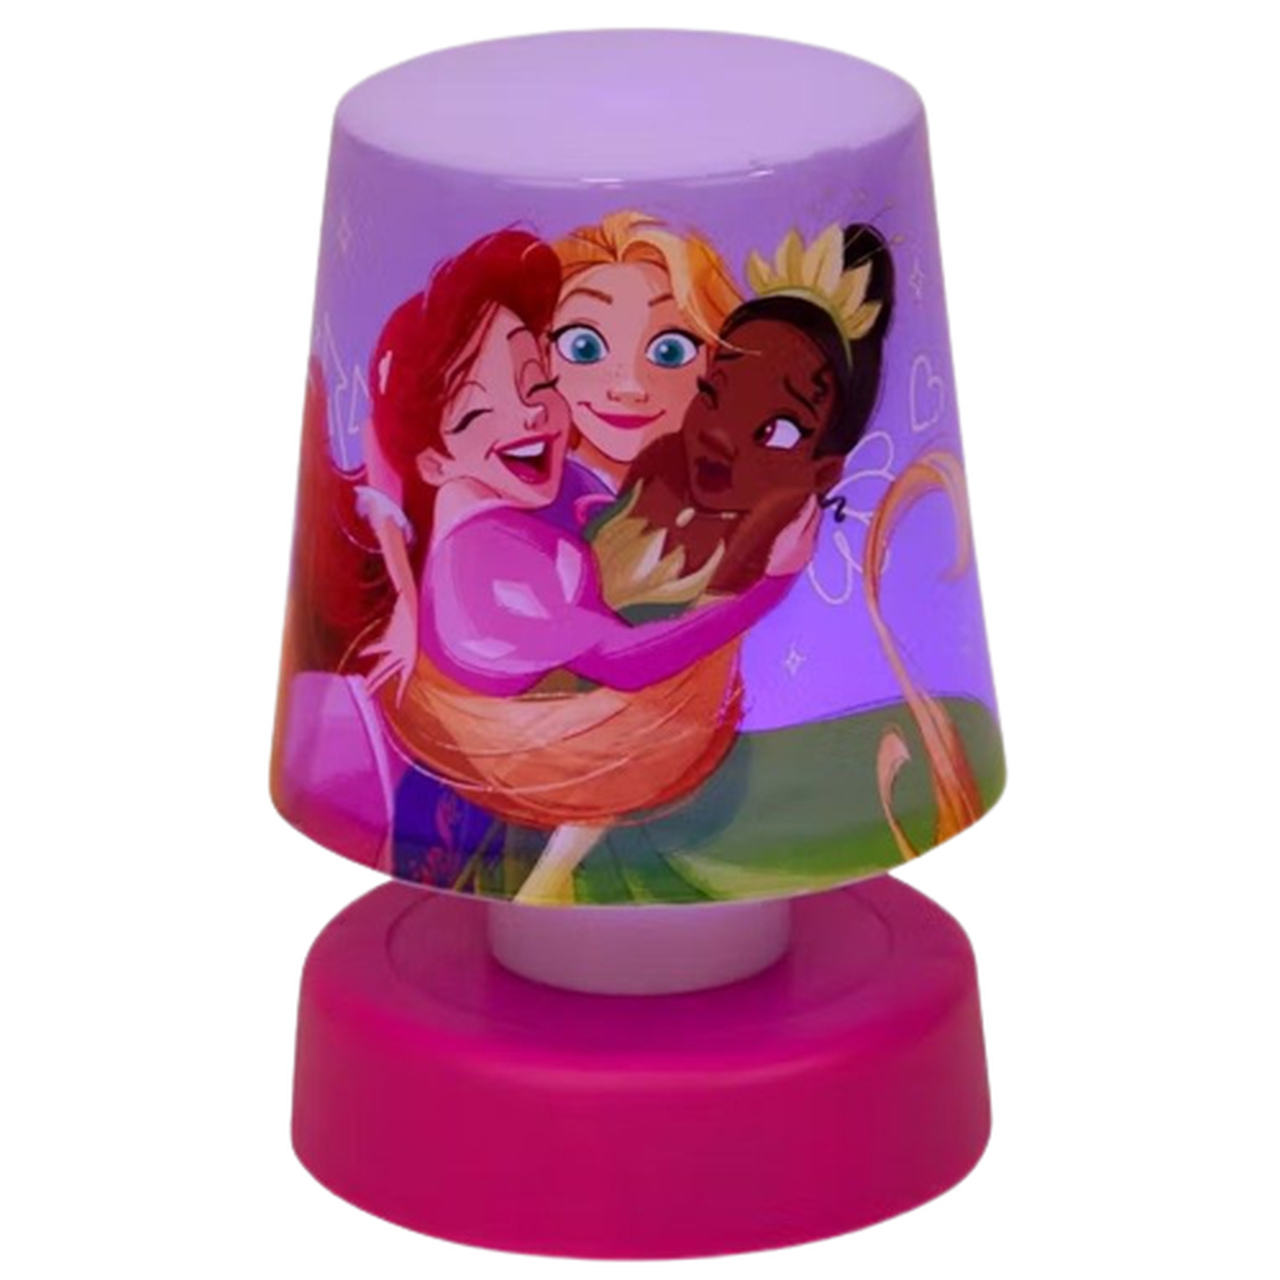 Tragisch Compatibel met verdiepen Nachtlampje druklamp Disney Princess drie prinsessen - Roze / Multicolor -  Kunststof - 8 x 8 x 12 cm - Lampje - Nachtlampje - Lamp - Licht - Red Hart  | All You Need Is Low Prices